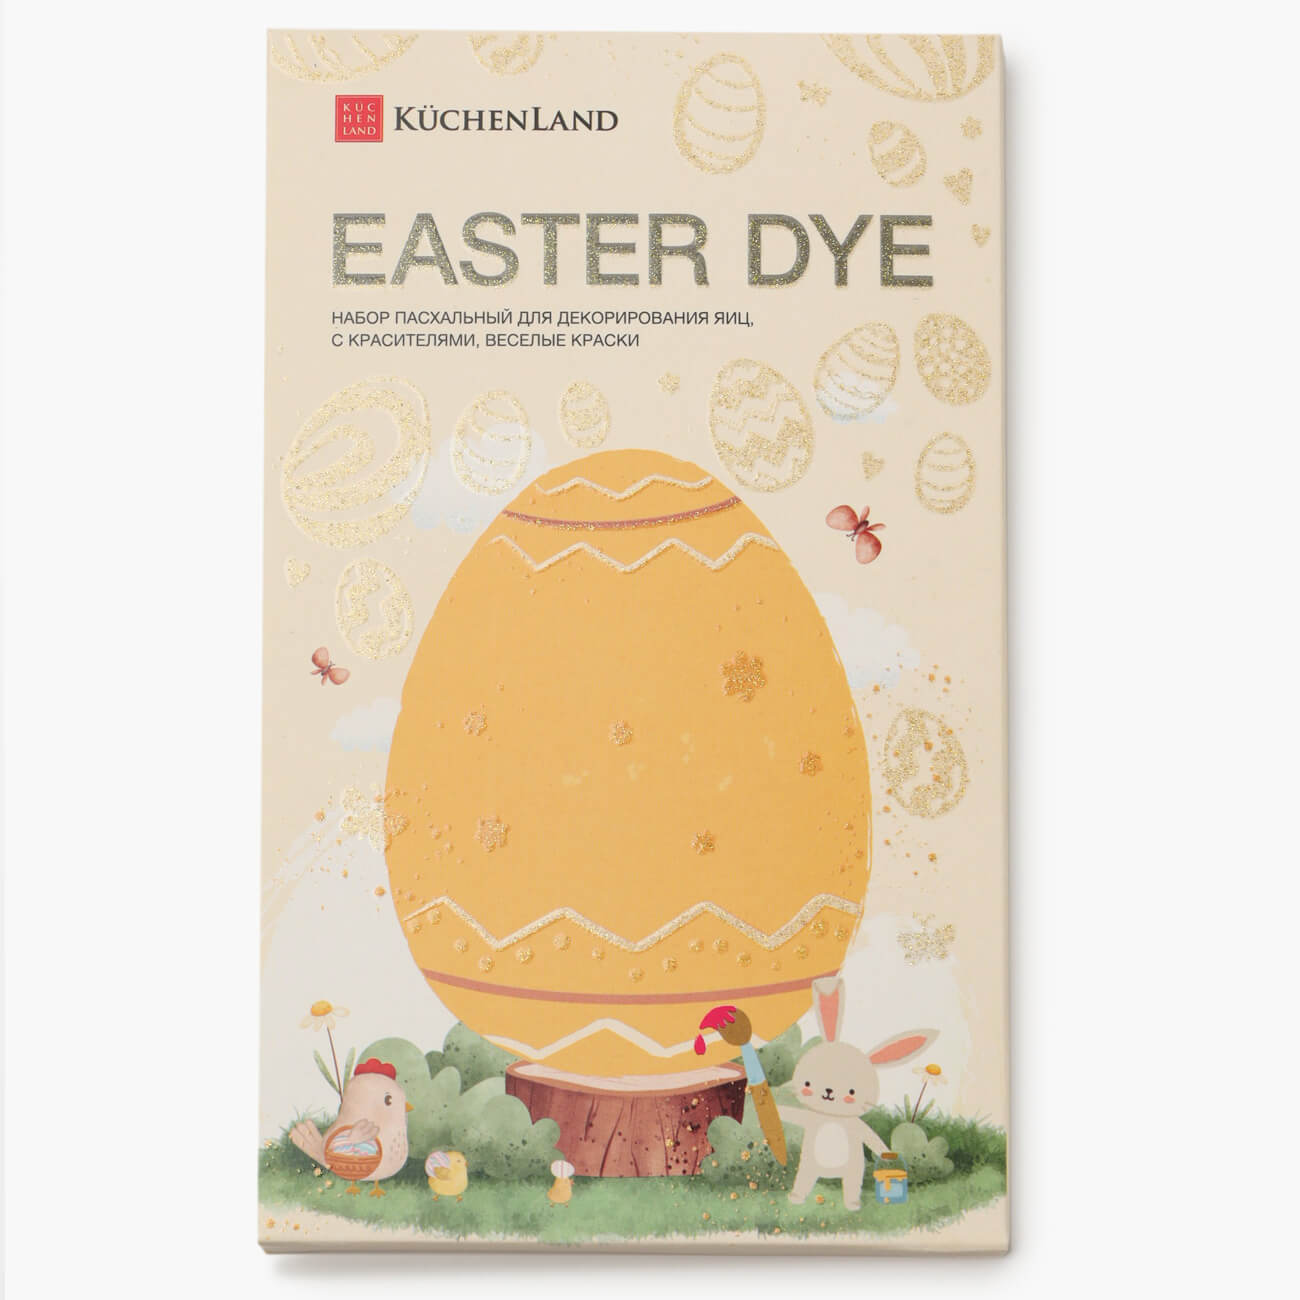 Набор пасхальный для декорирования яиц, 7 цветов/13 пр, Веселые краски, Easter dye набор наклеек для яиц 17х10 см 26 шт пасхальный пвх цыплята easter decal